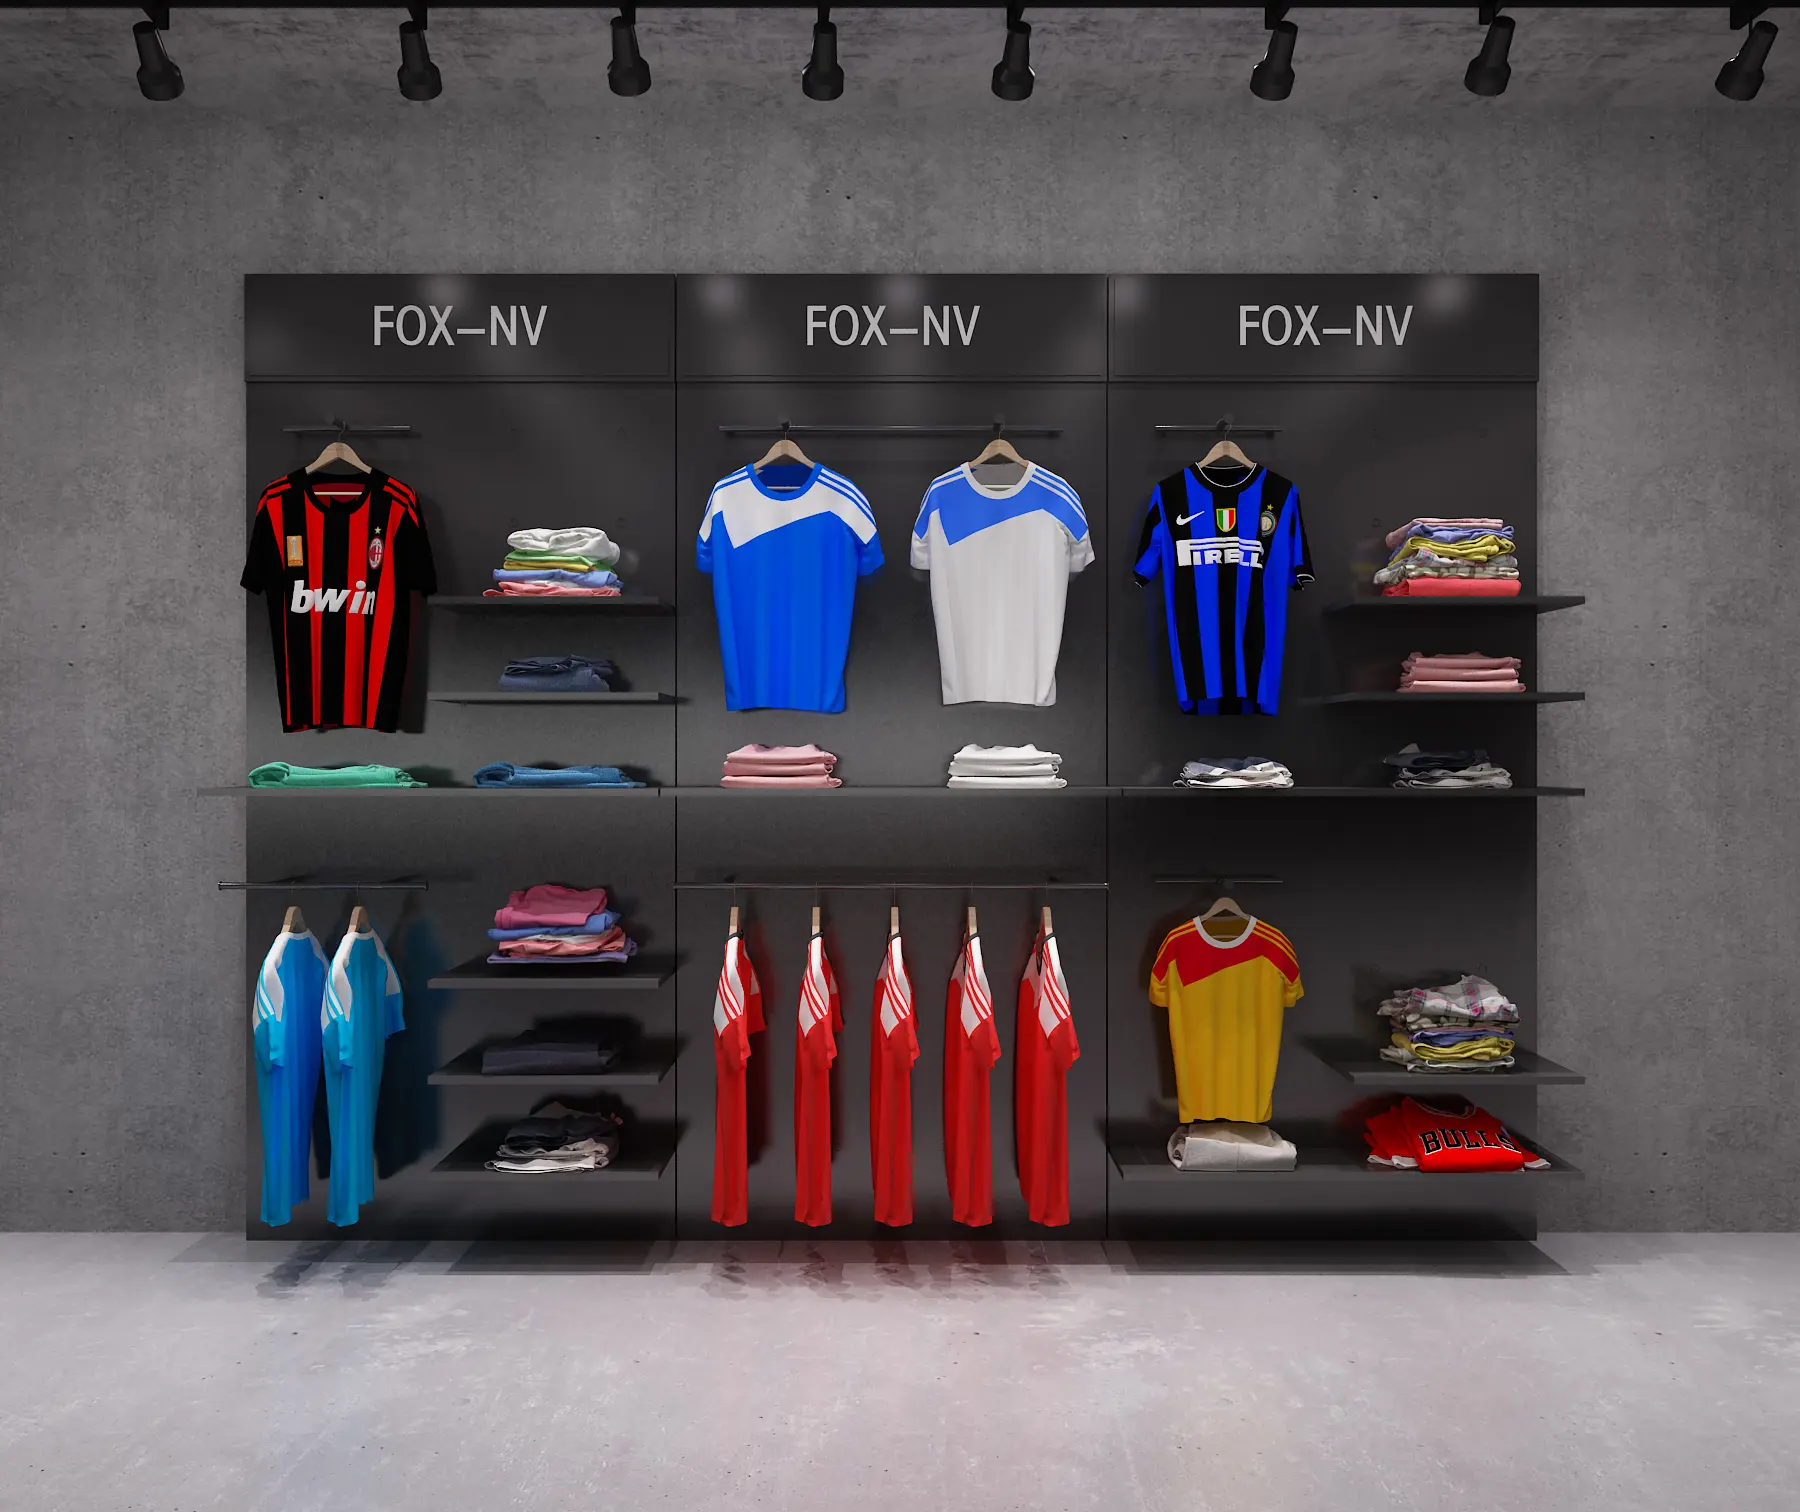 Vente en gros de vêtements de sport pour hommes Design d'intérieur pour magasin Présentoir de vêtements de sport noir personnalisé pour magasin de vêtements